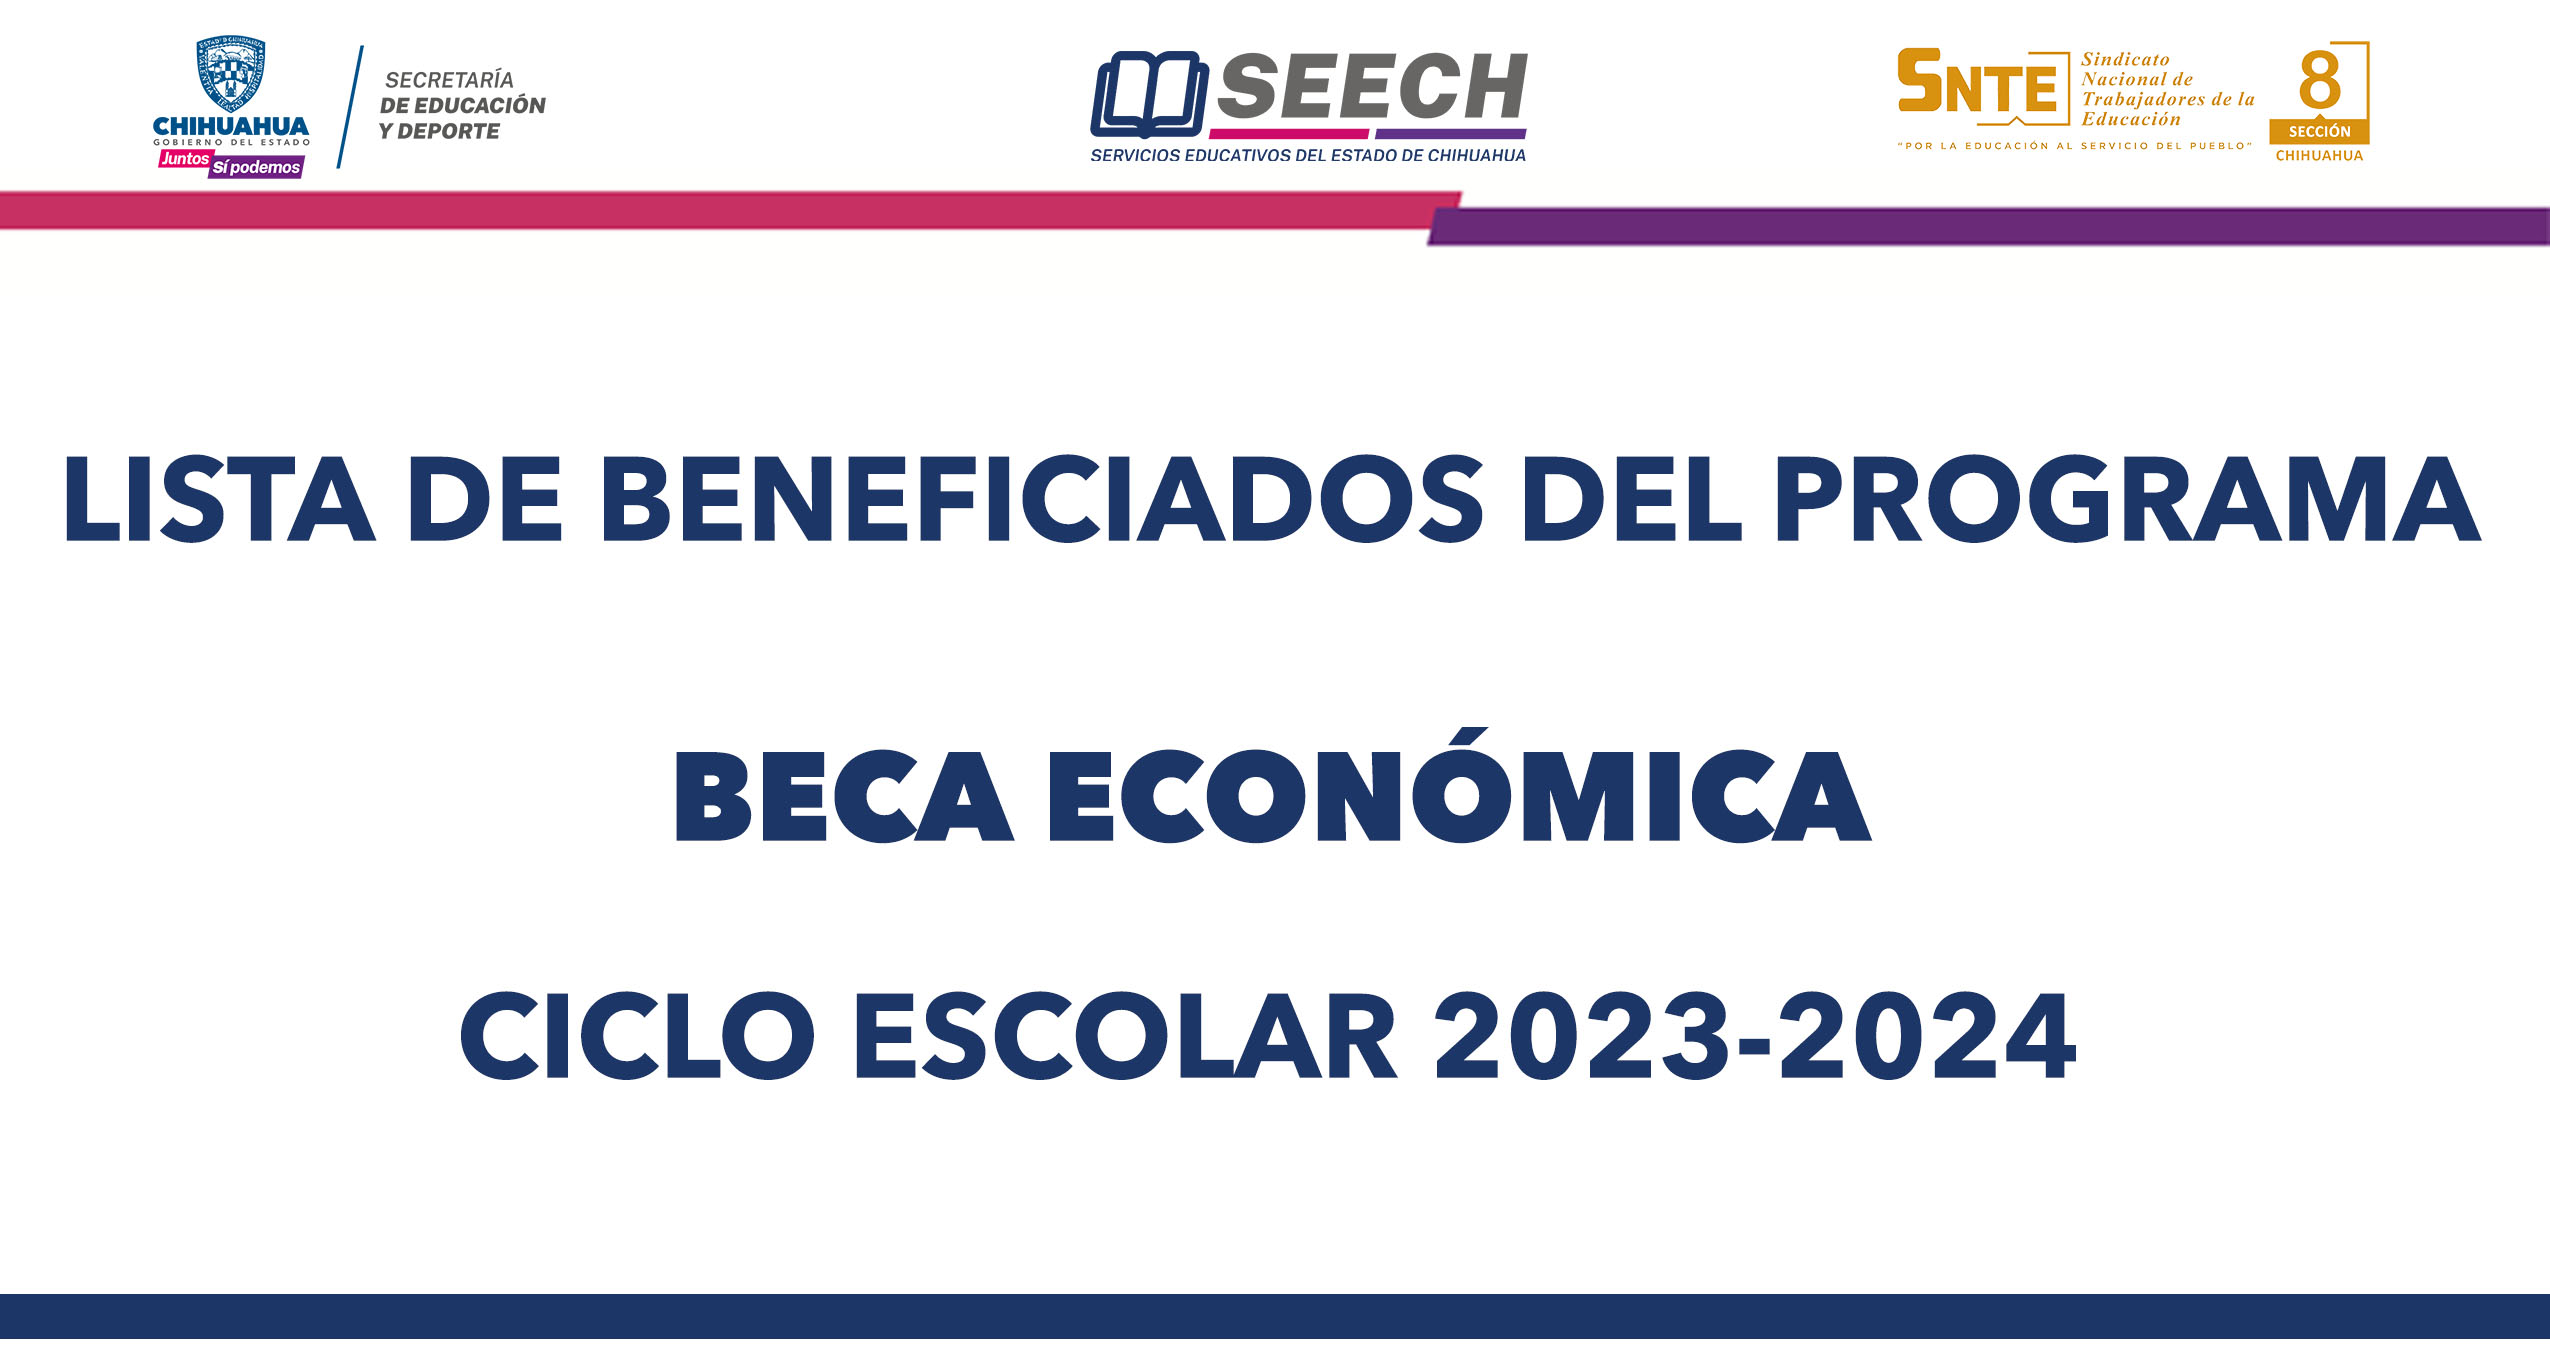 LISTA DE BENEFICIADOS DEL PROGRAMA DE BECA ECONÓMICA CICLO ESCOLAR 2023-2024